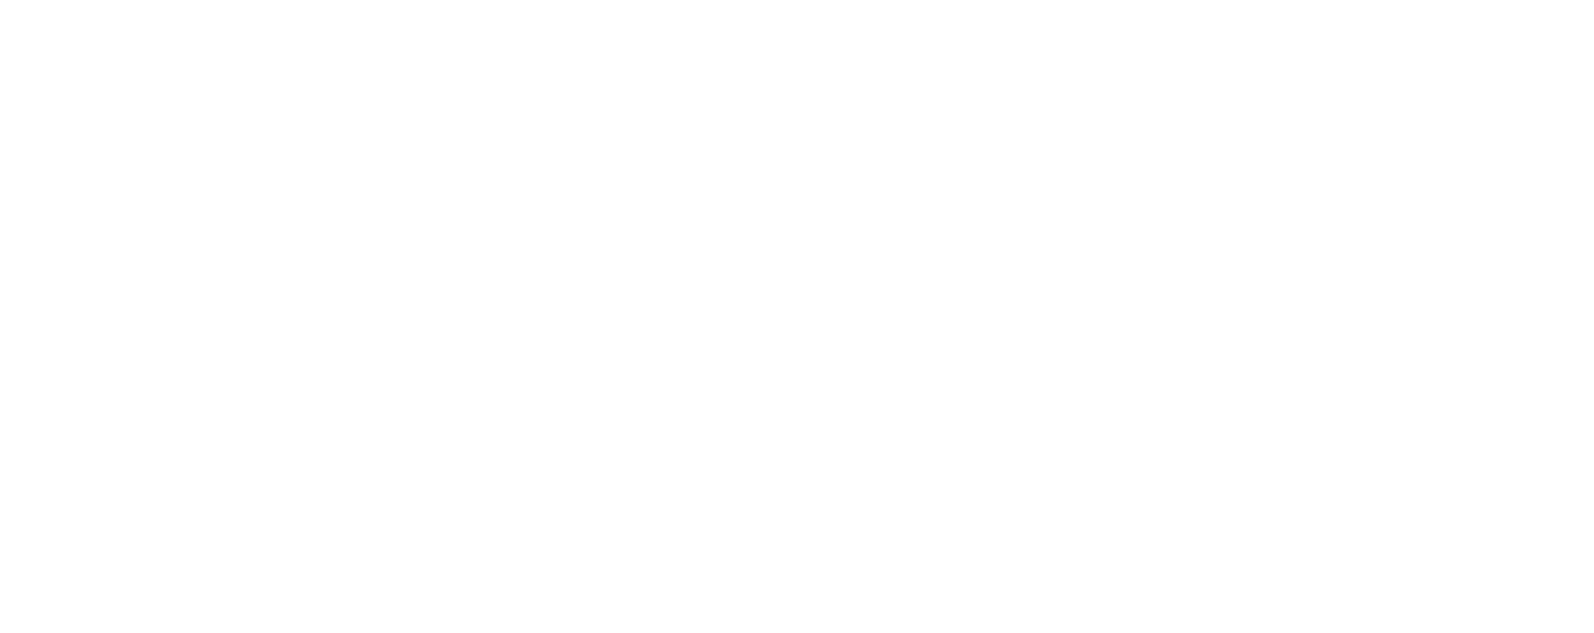 Light & Wonder logo large for dark backgrounds (transparent PNG)